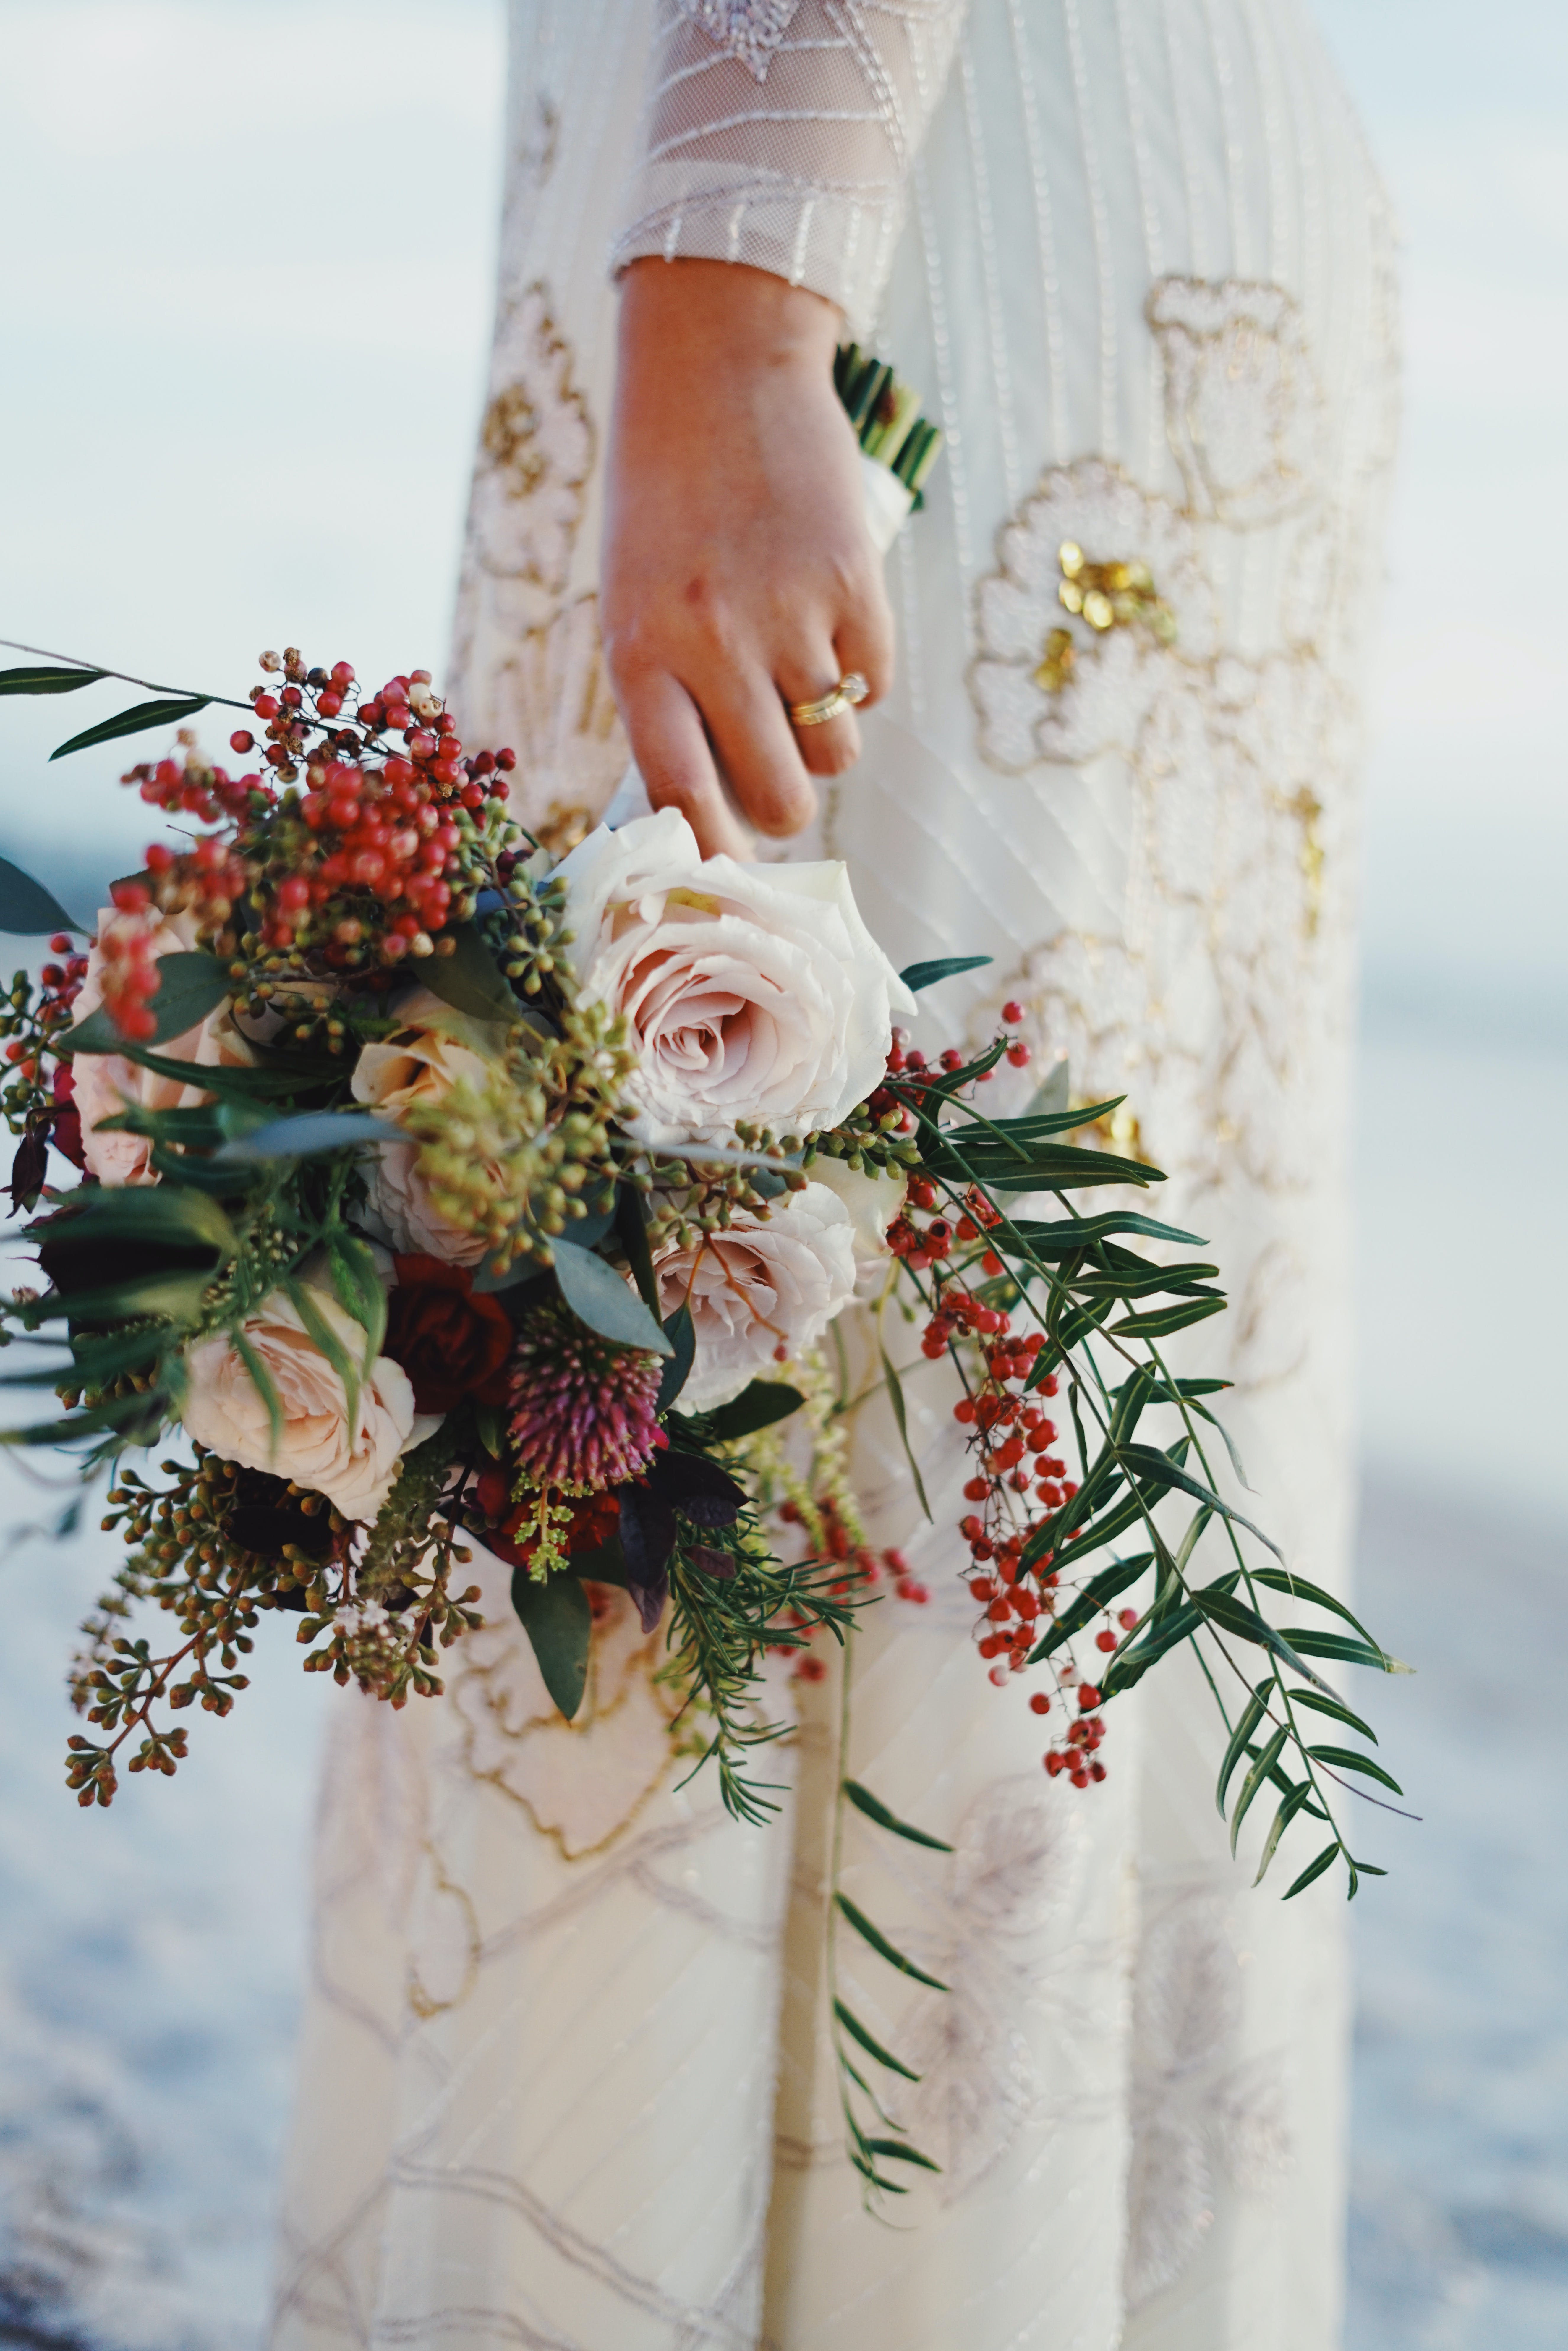 Bruid met bloemen